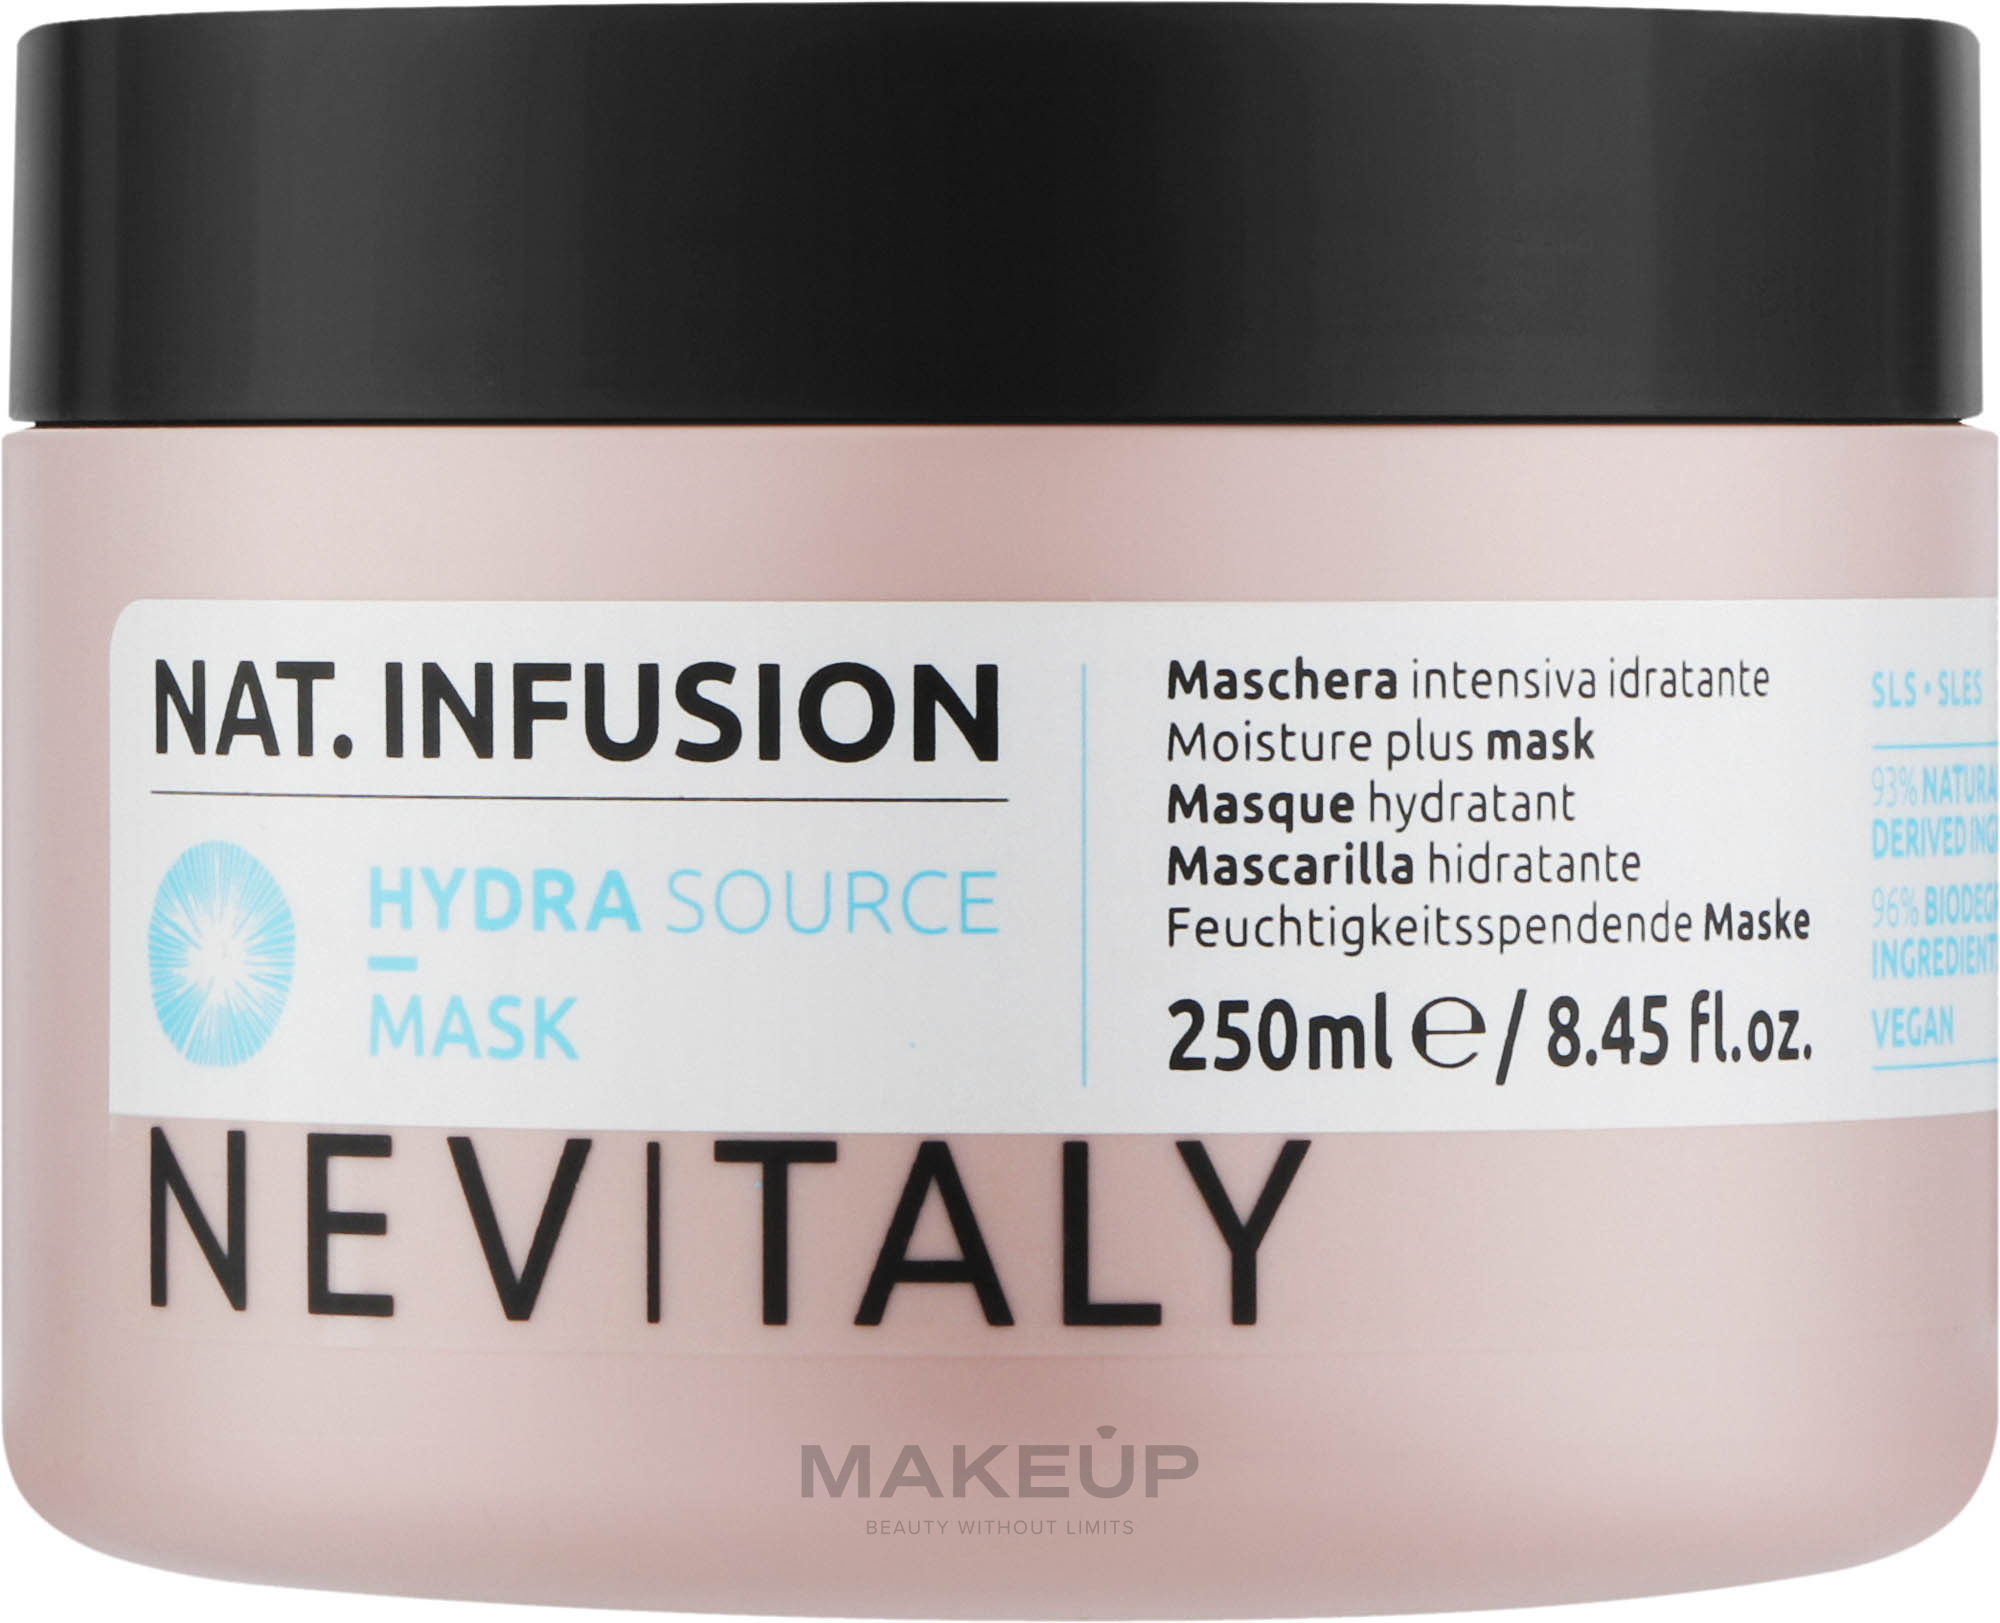 Маска для максимального увлажнения сухих волос - Nevitaly Moisture Plus Mask — фото 250ml